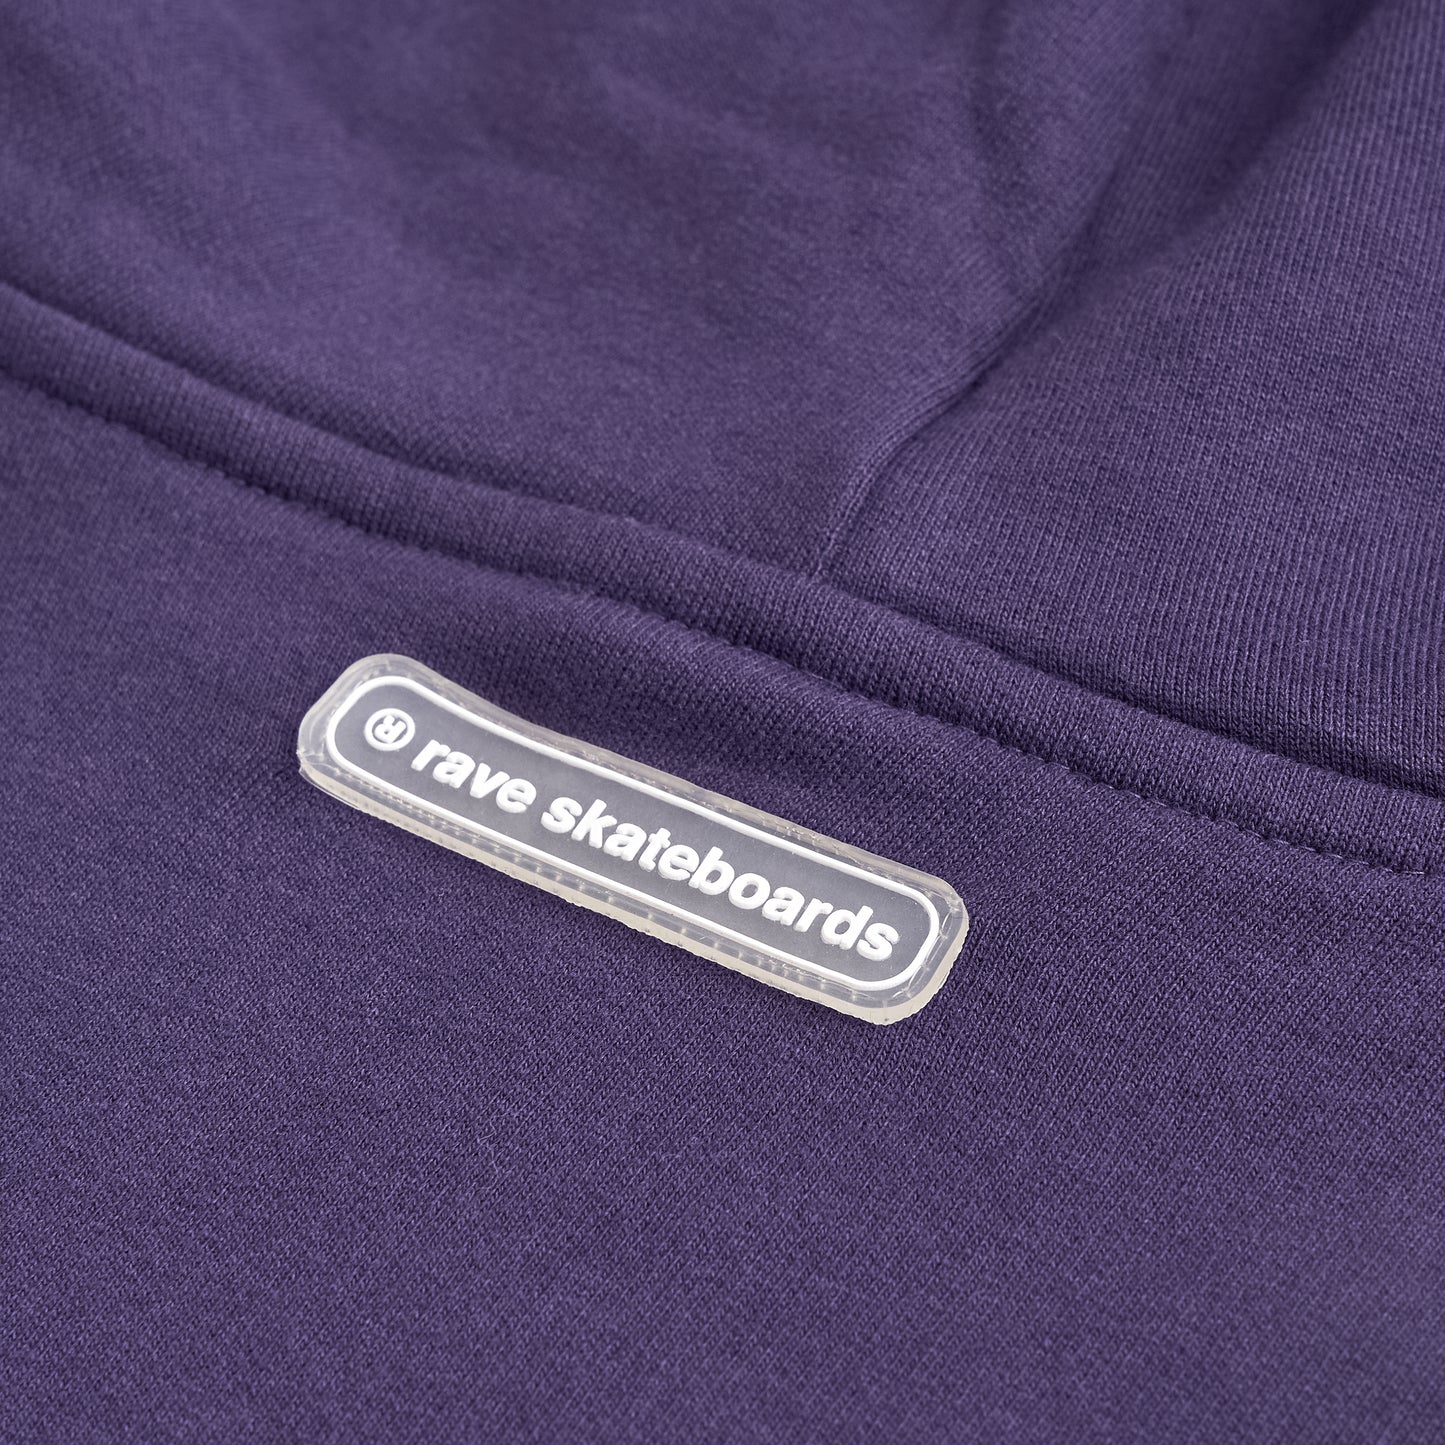 ® LOGO hoodie dark purple